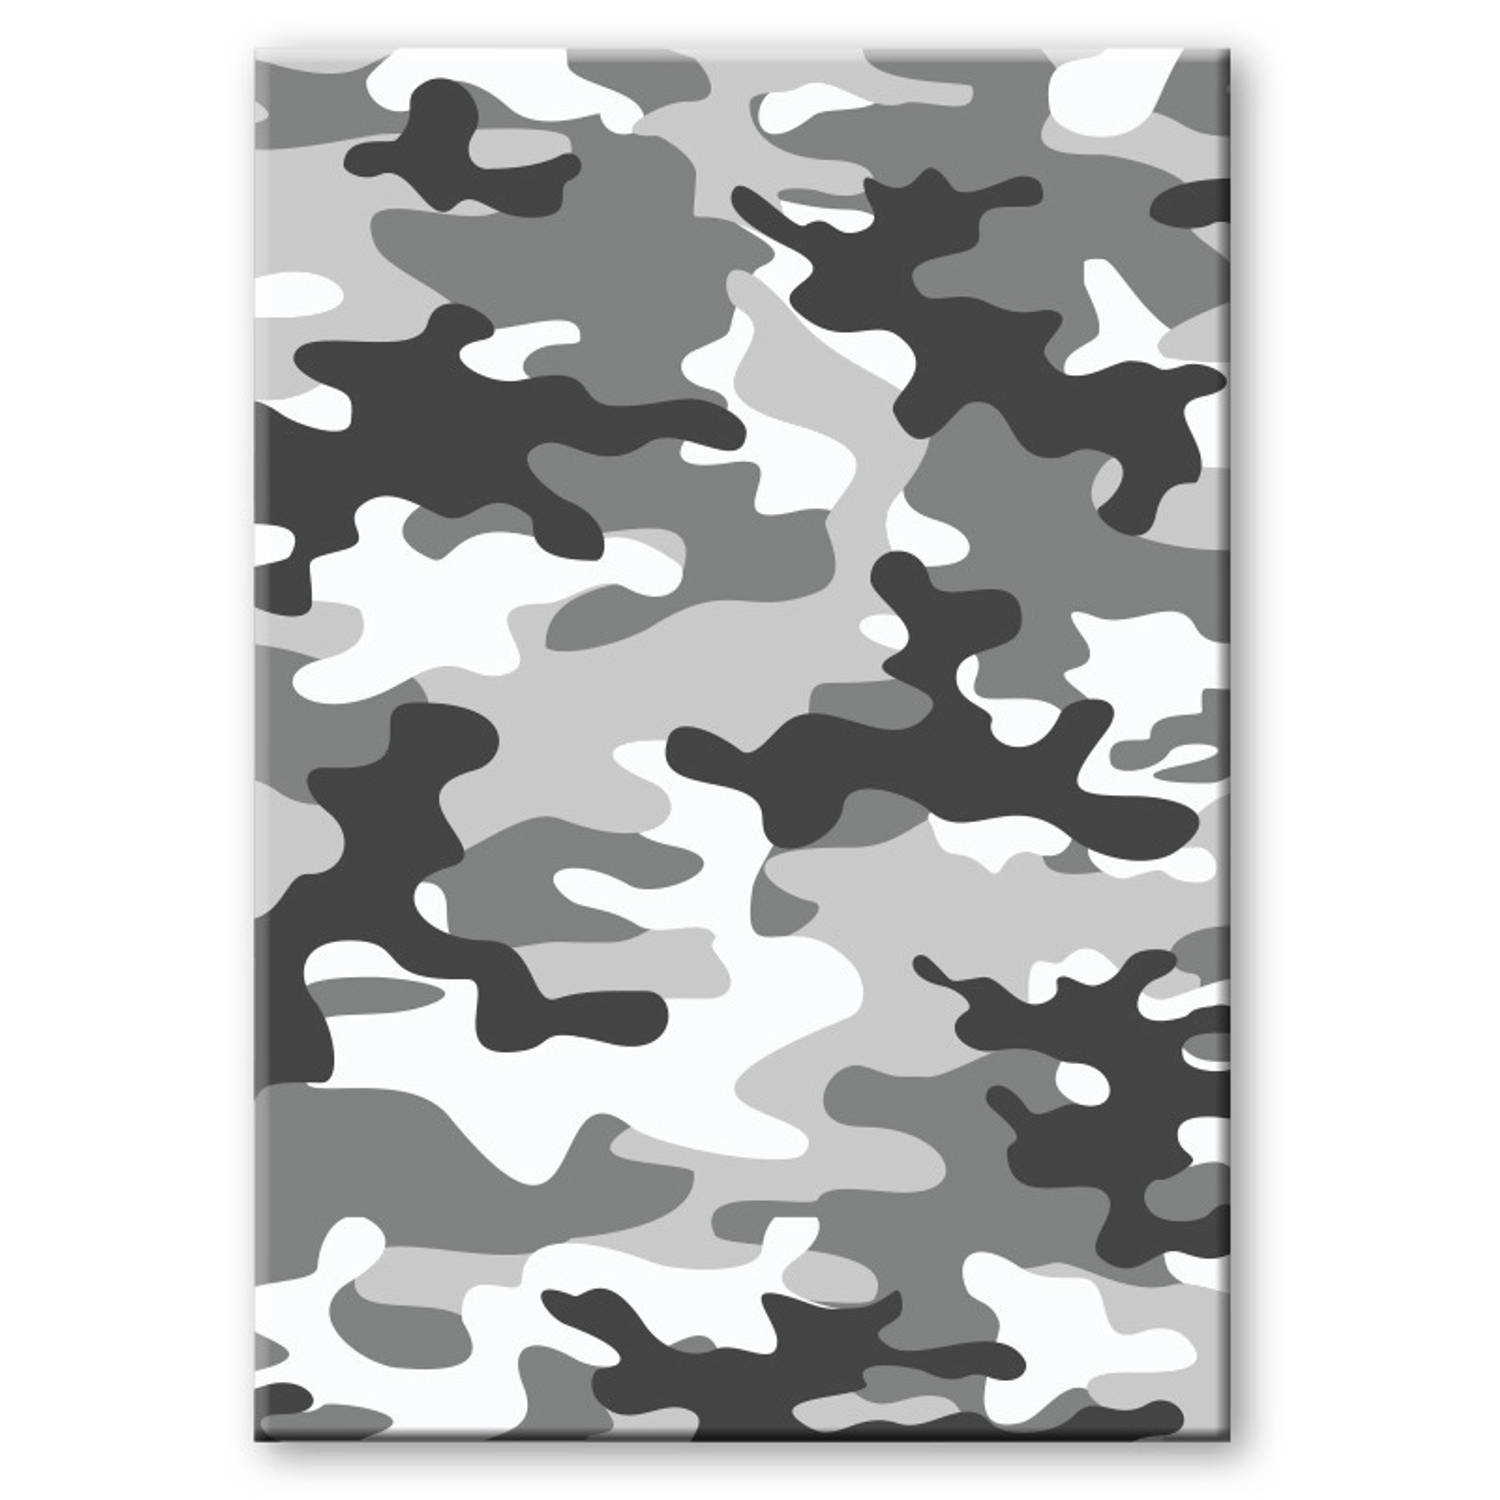 Camouflage/legerprint luxe wiskunde schrift/notitieboek grijs ruitjes 10 mm A4 formaat - Notitieboek